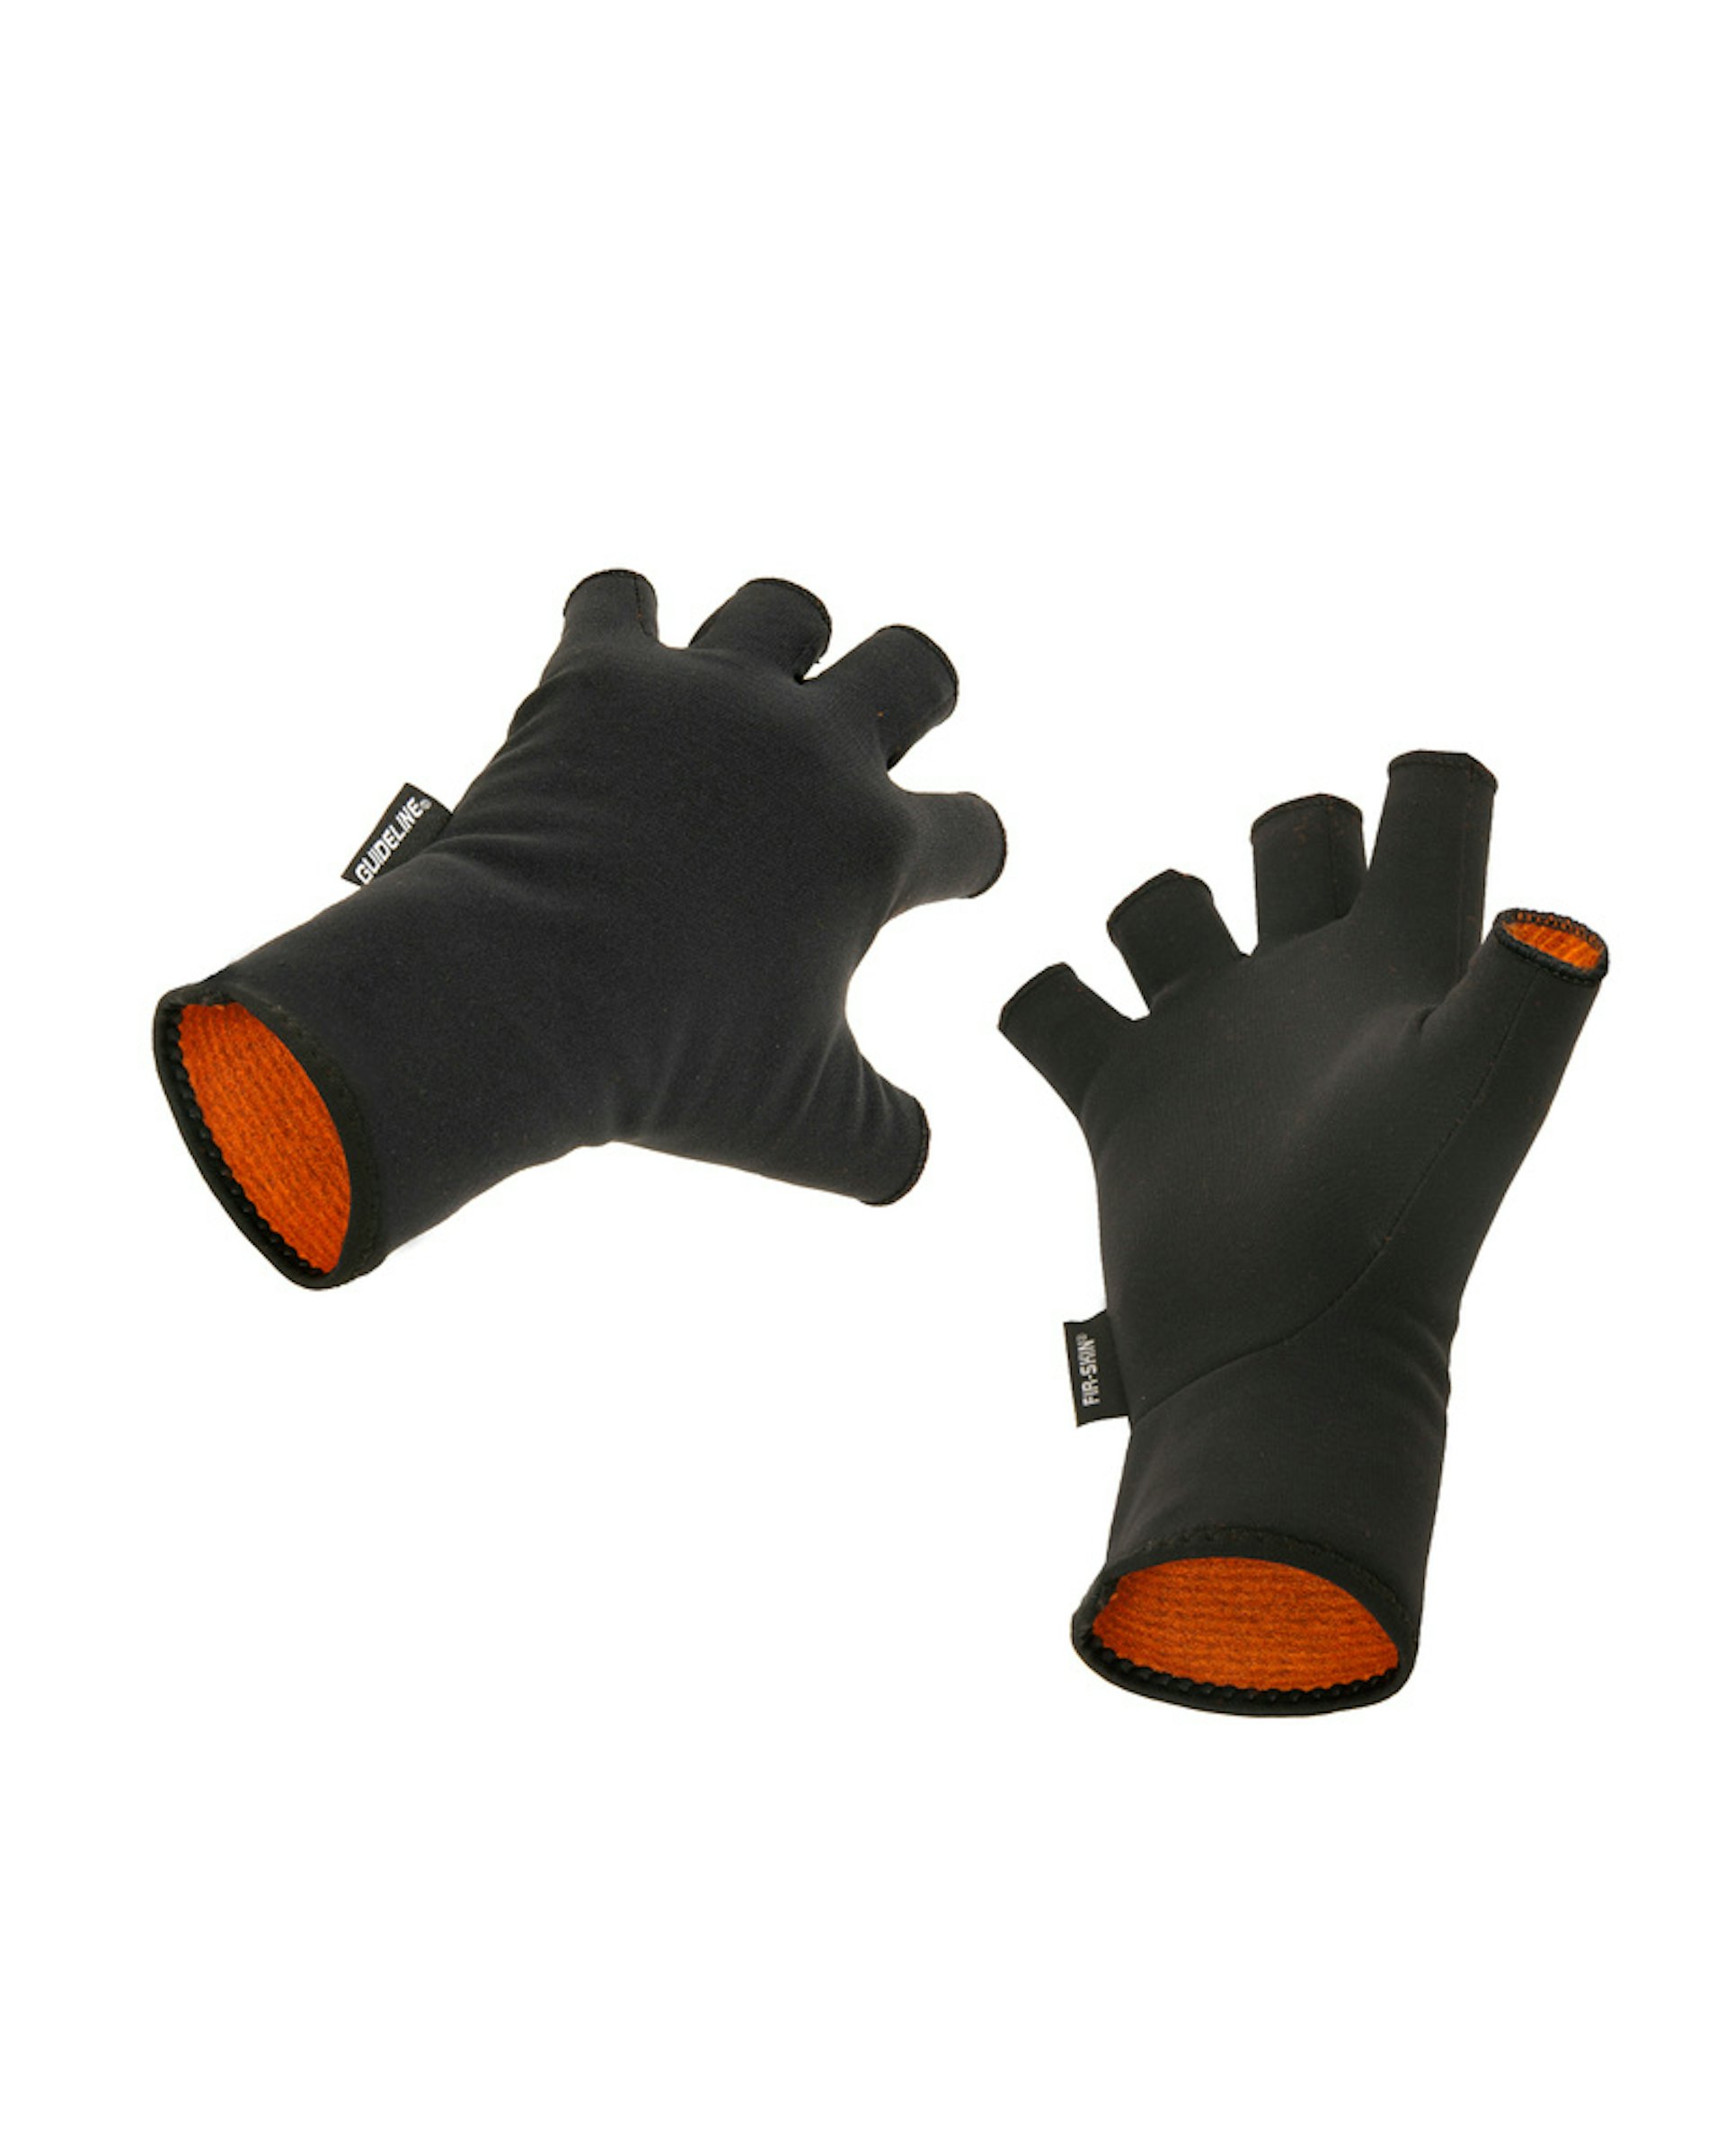 FIR-SKIN CGX Fingerless Gloves L (bild 1 av 1)